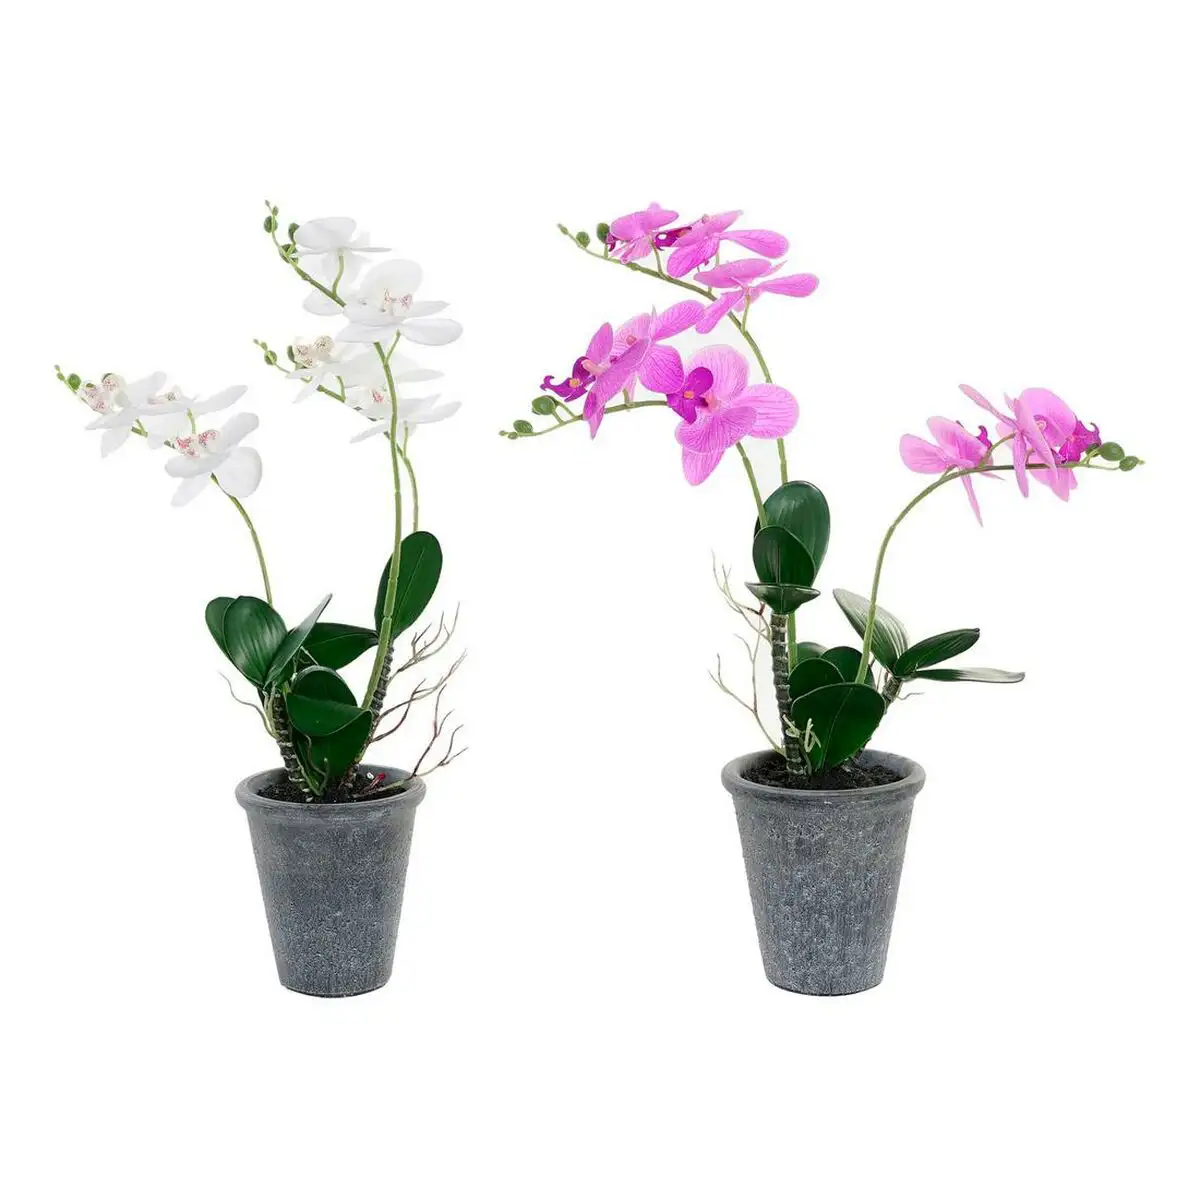 Plante decorative dkd home decor 30 x 22 x 51 cm gris lila blanc orchidee 2 unites _1548. DIAYTAR SENEGAL - Où Choisir Devient un Plaisir. Découvrez notre boutique en ligne et choisissez parmi une variété de produits qui satisferont tous vos besoins.